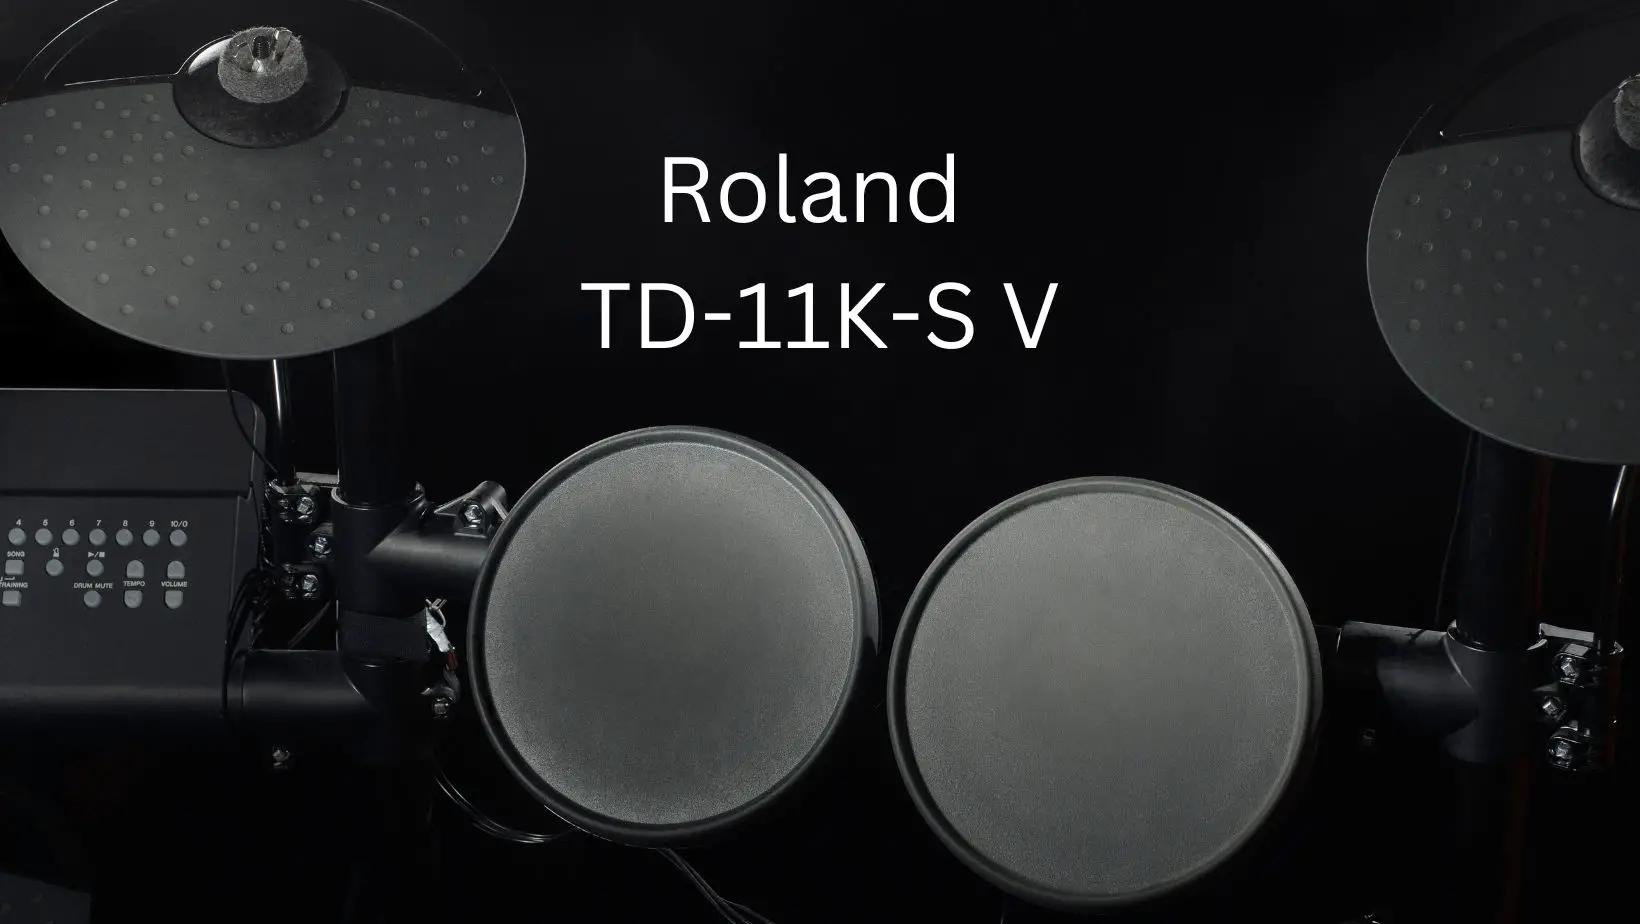 Roland TD-11K-S V